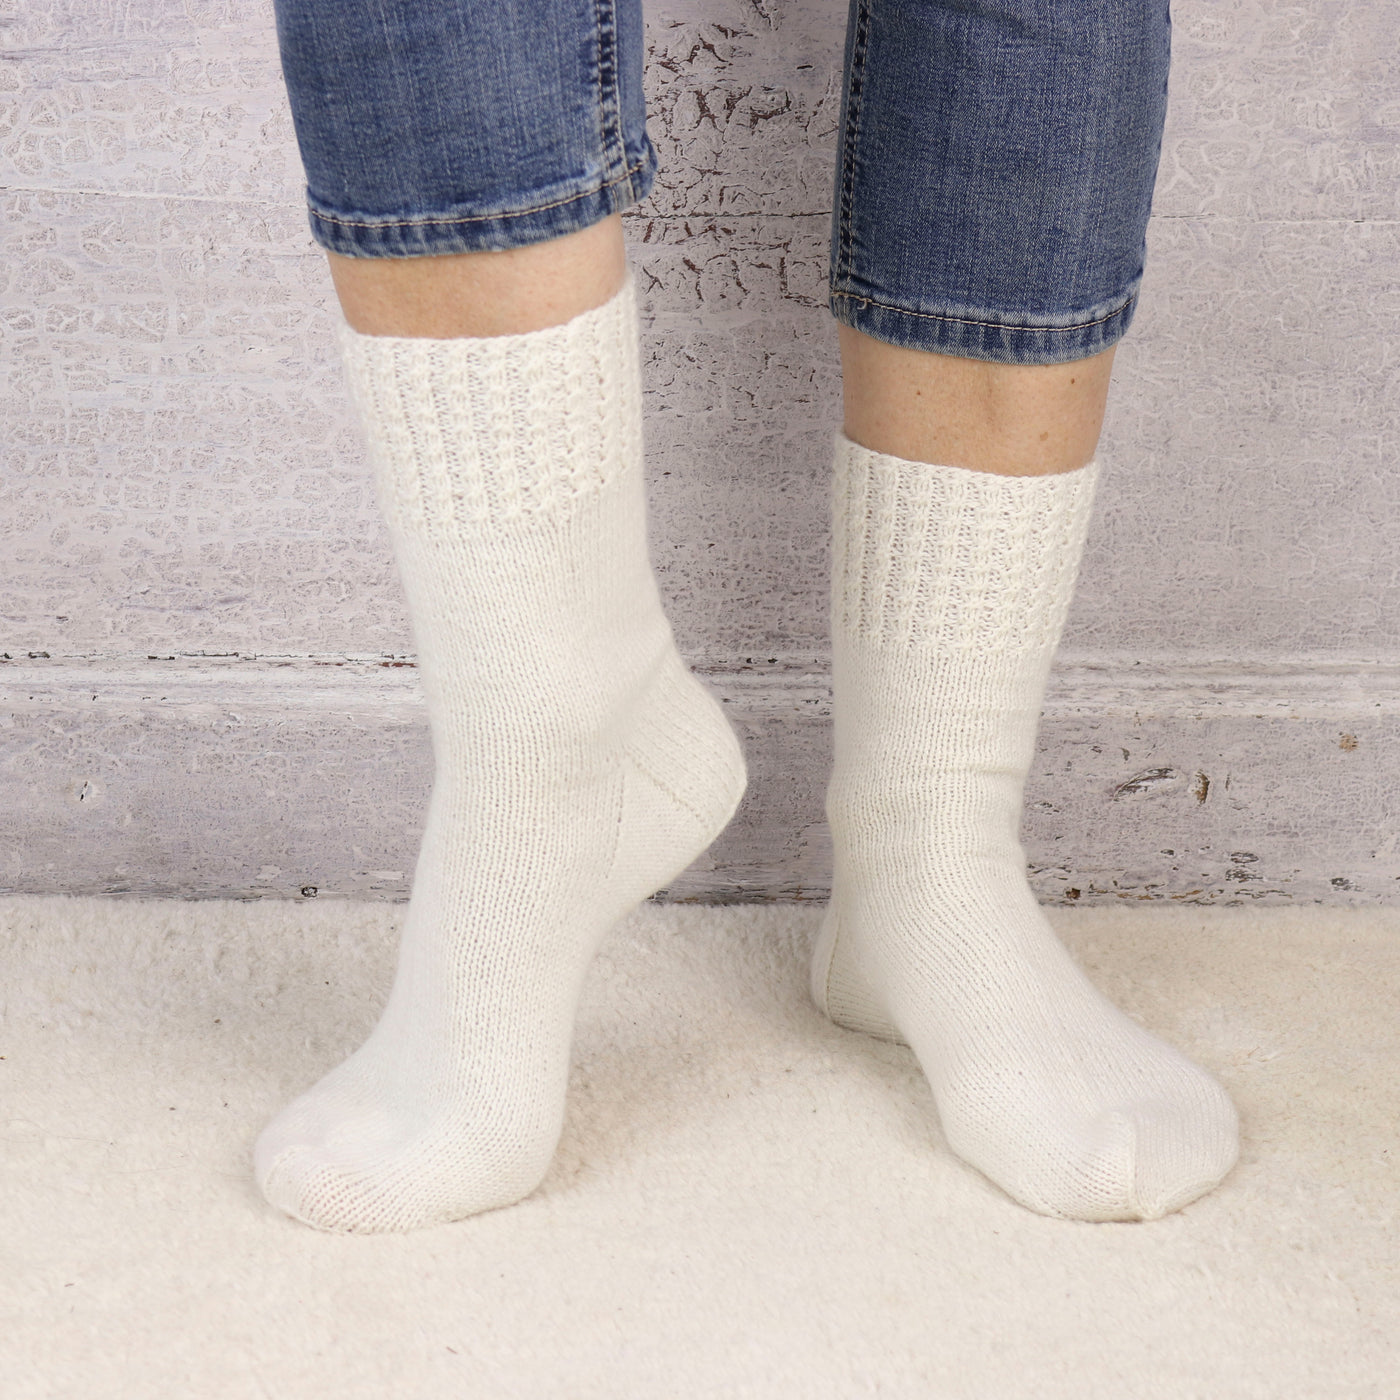 The Fibre Co. Amble One Sock Pattern (PDF Download)